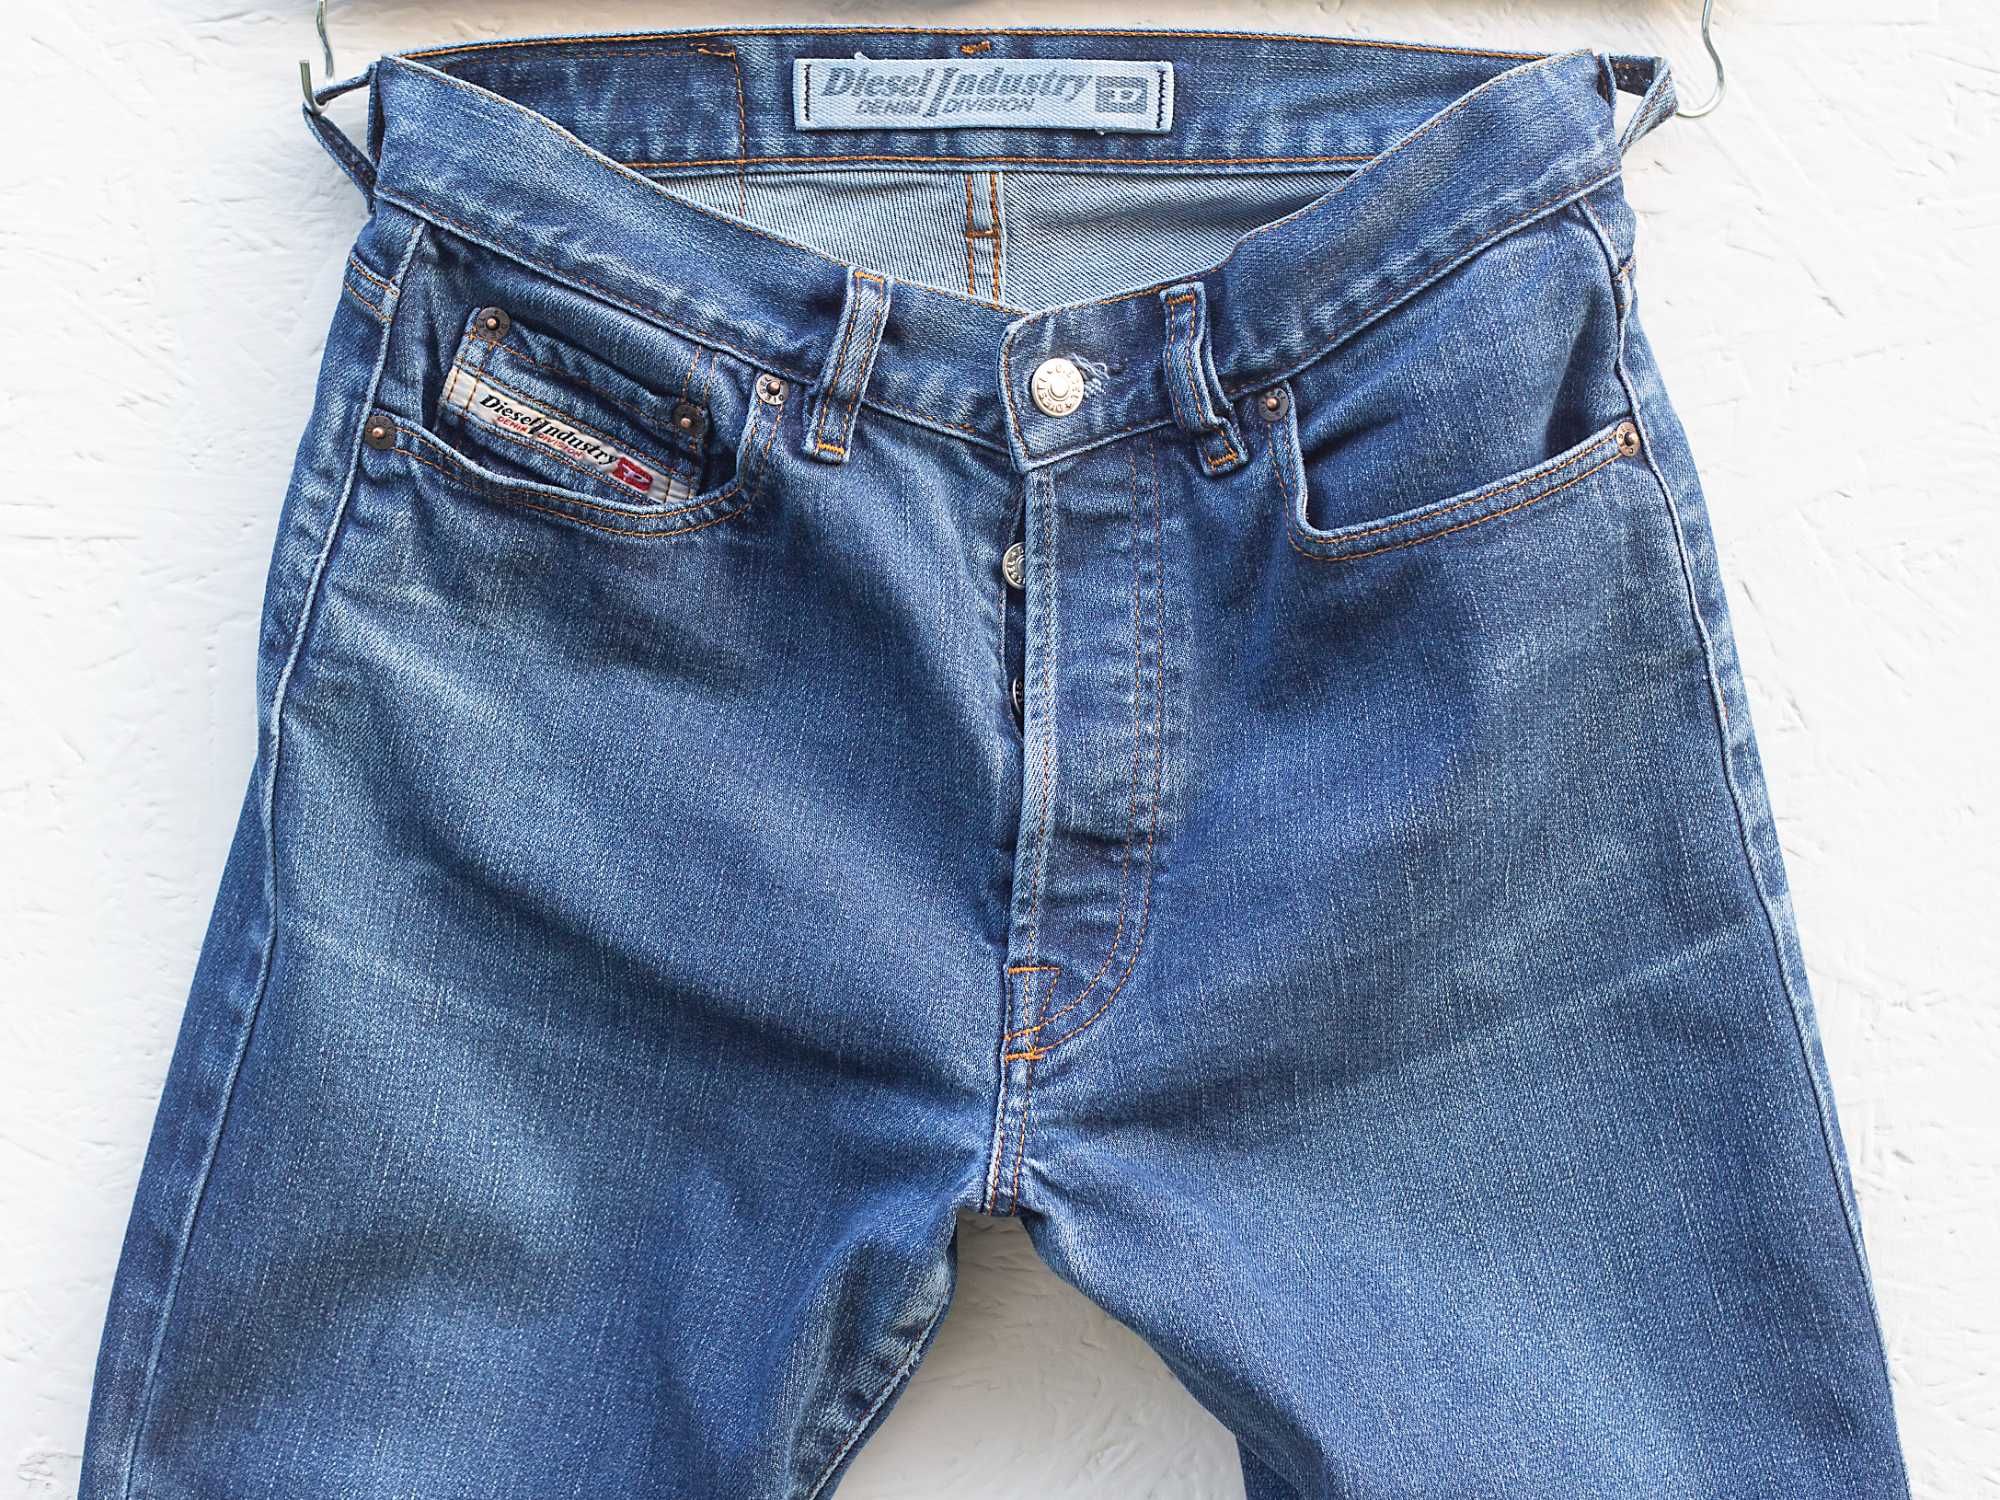 Diesel roz 31 włoskie spodnie jeansy proste nogawki dopasowany krój